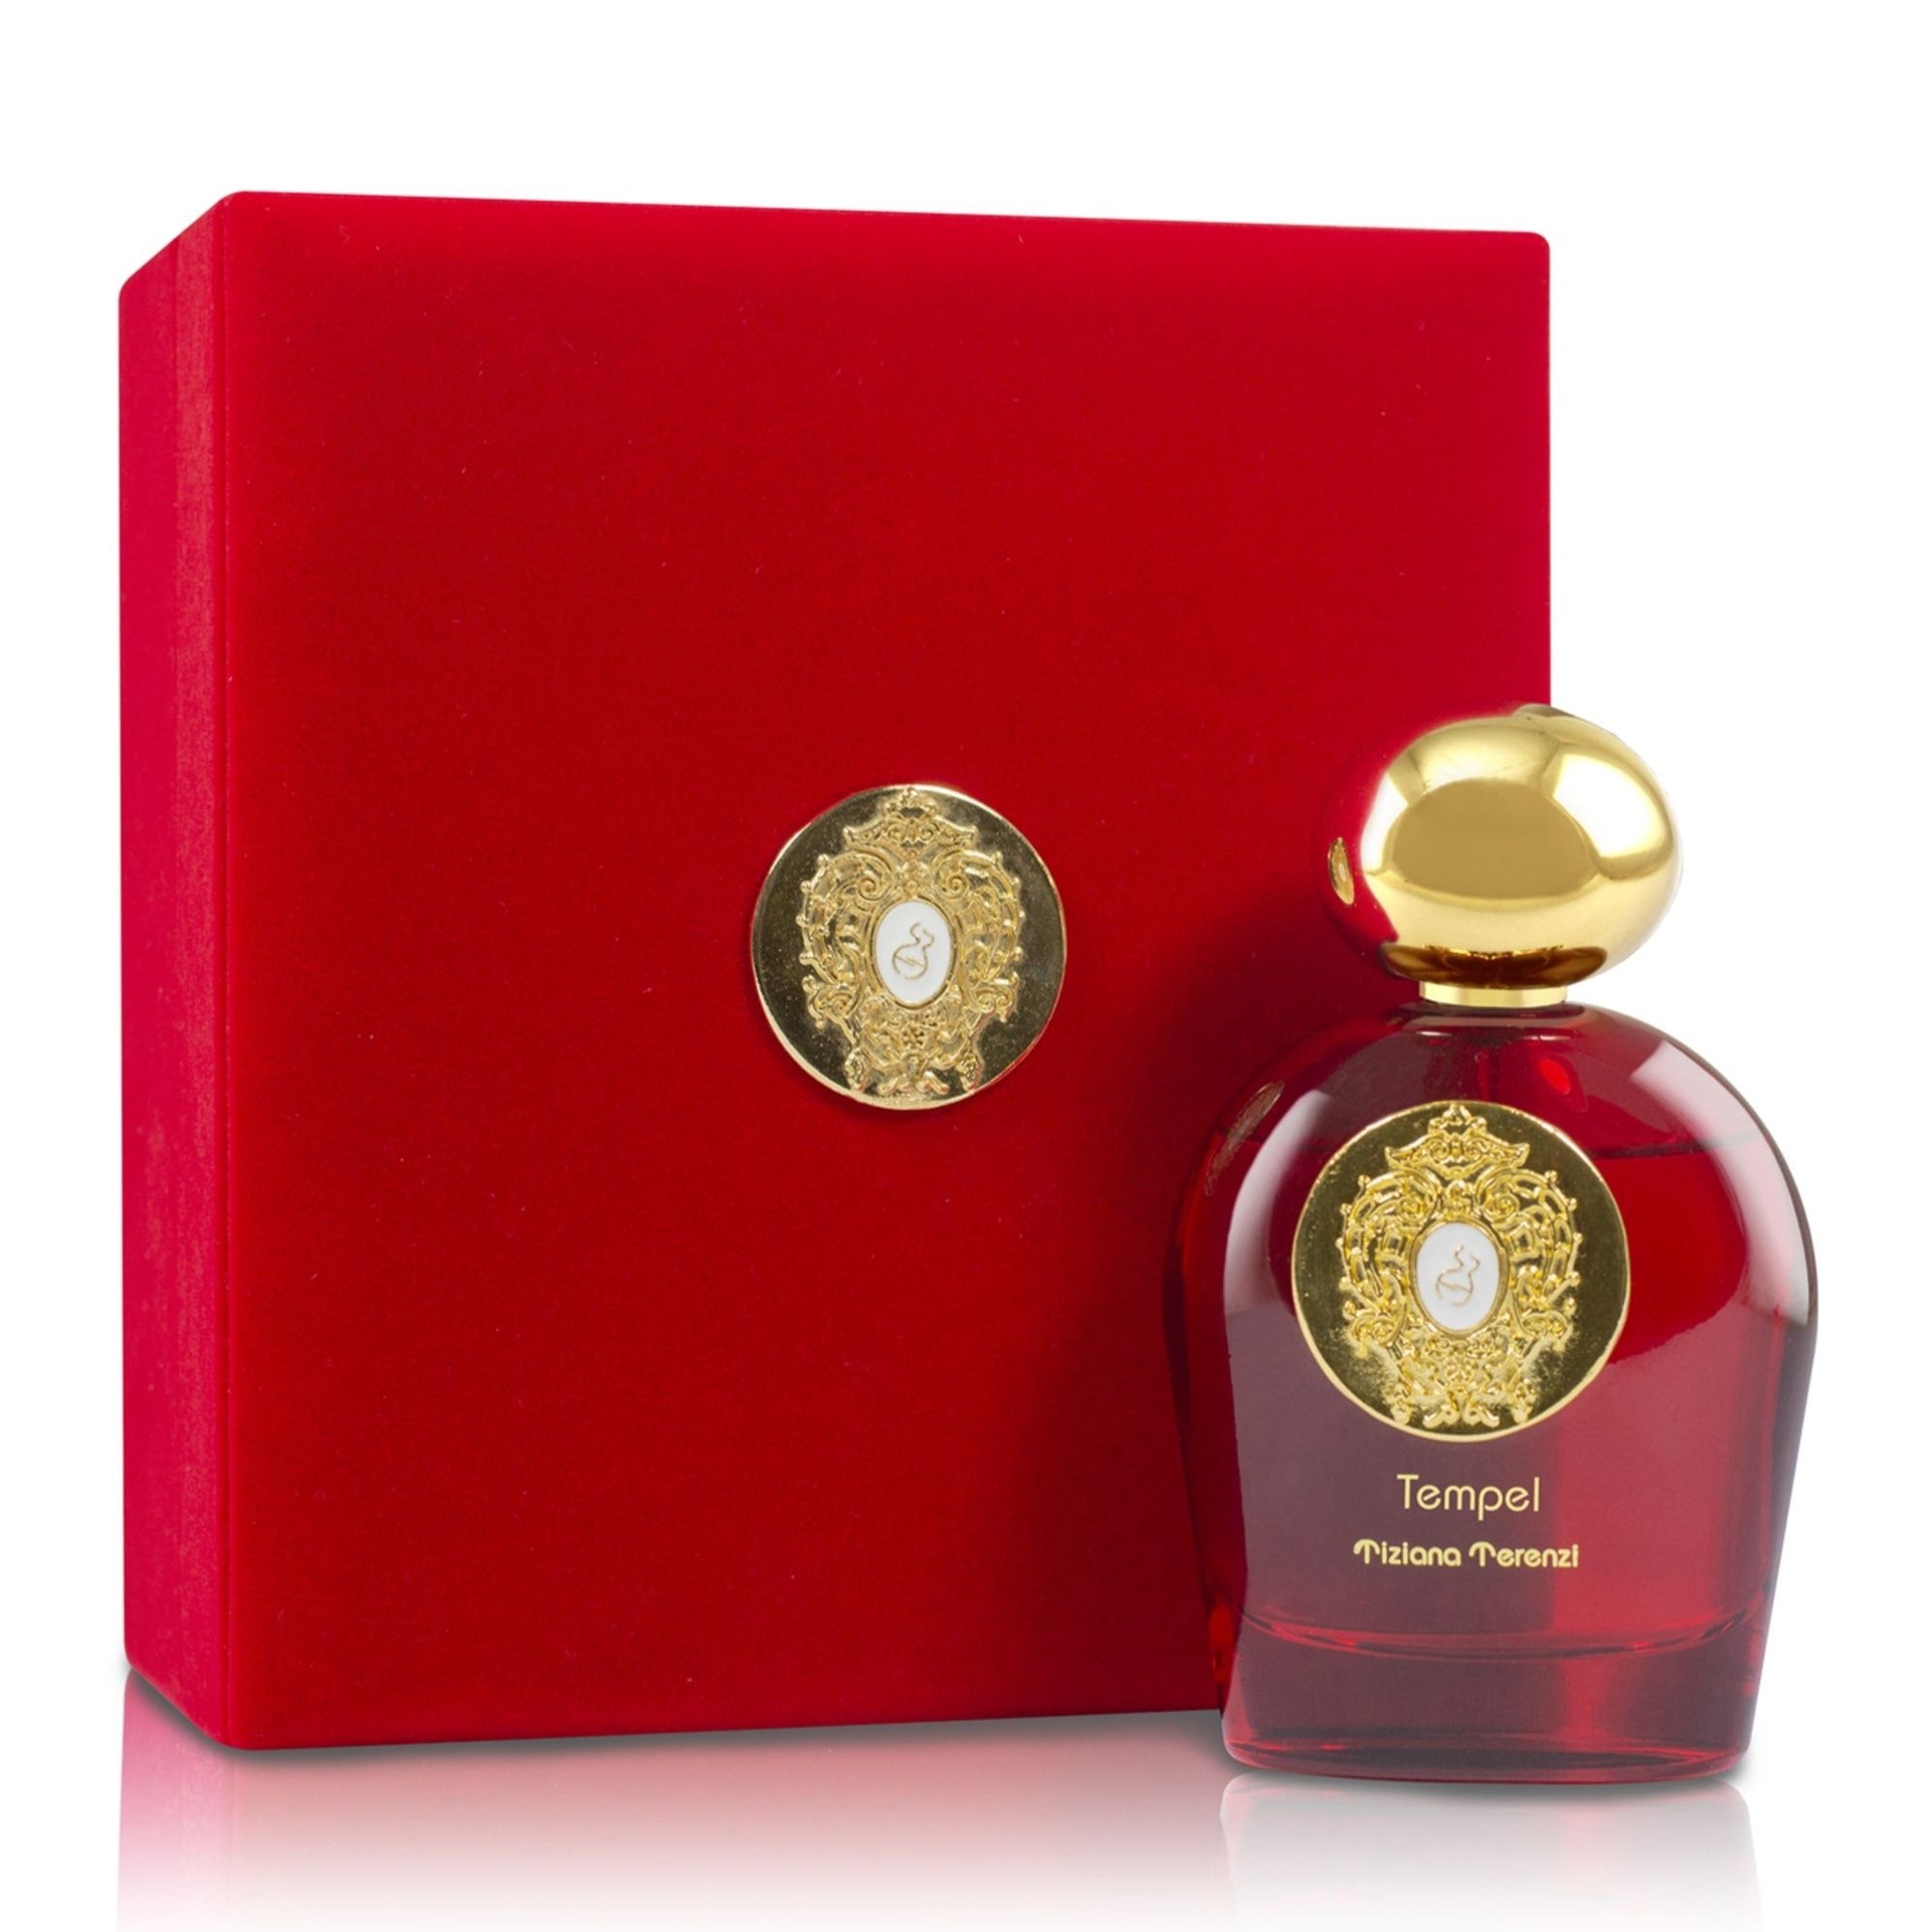 Tiziana Terenzi Comet Collection Tempel Extrait De Parfum | My Perfume Shop Australia